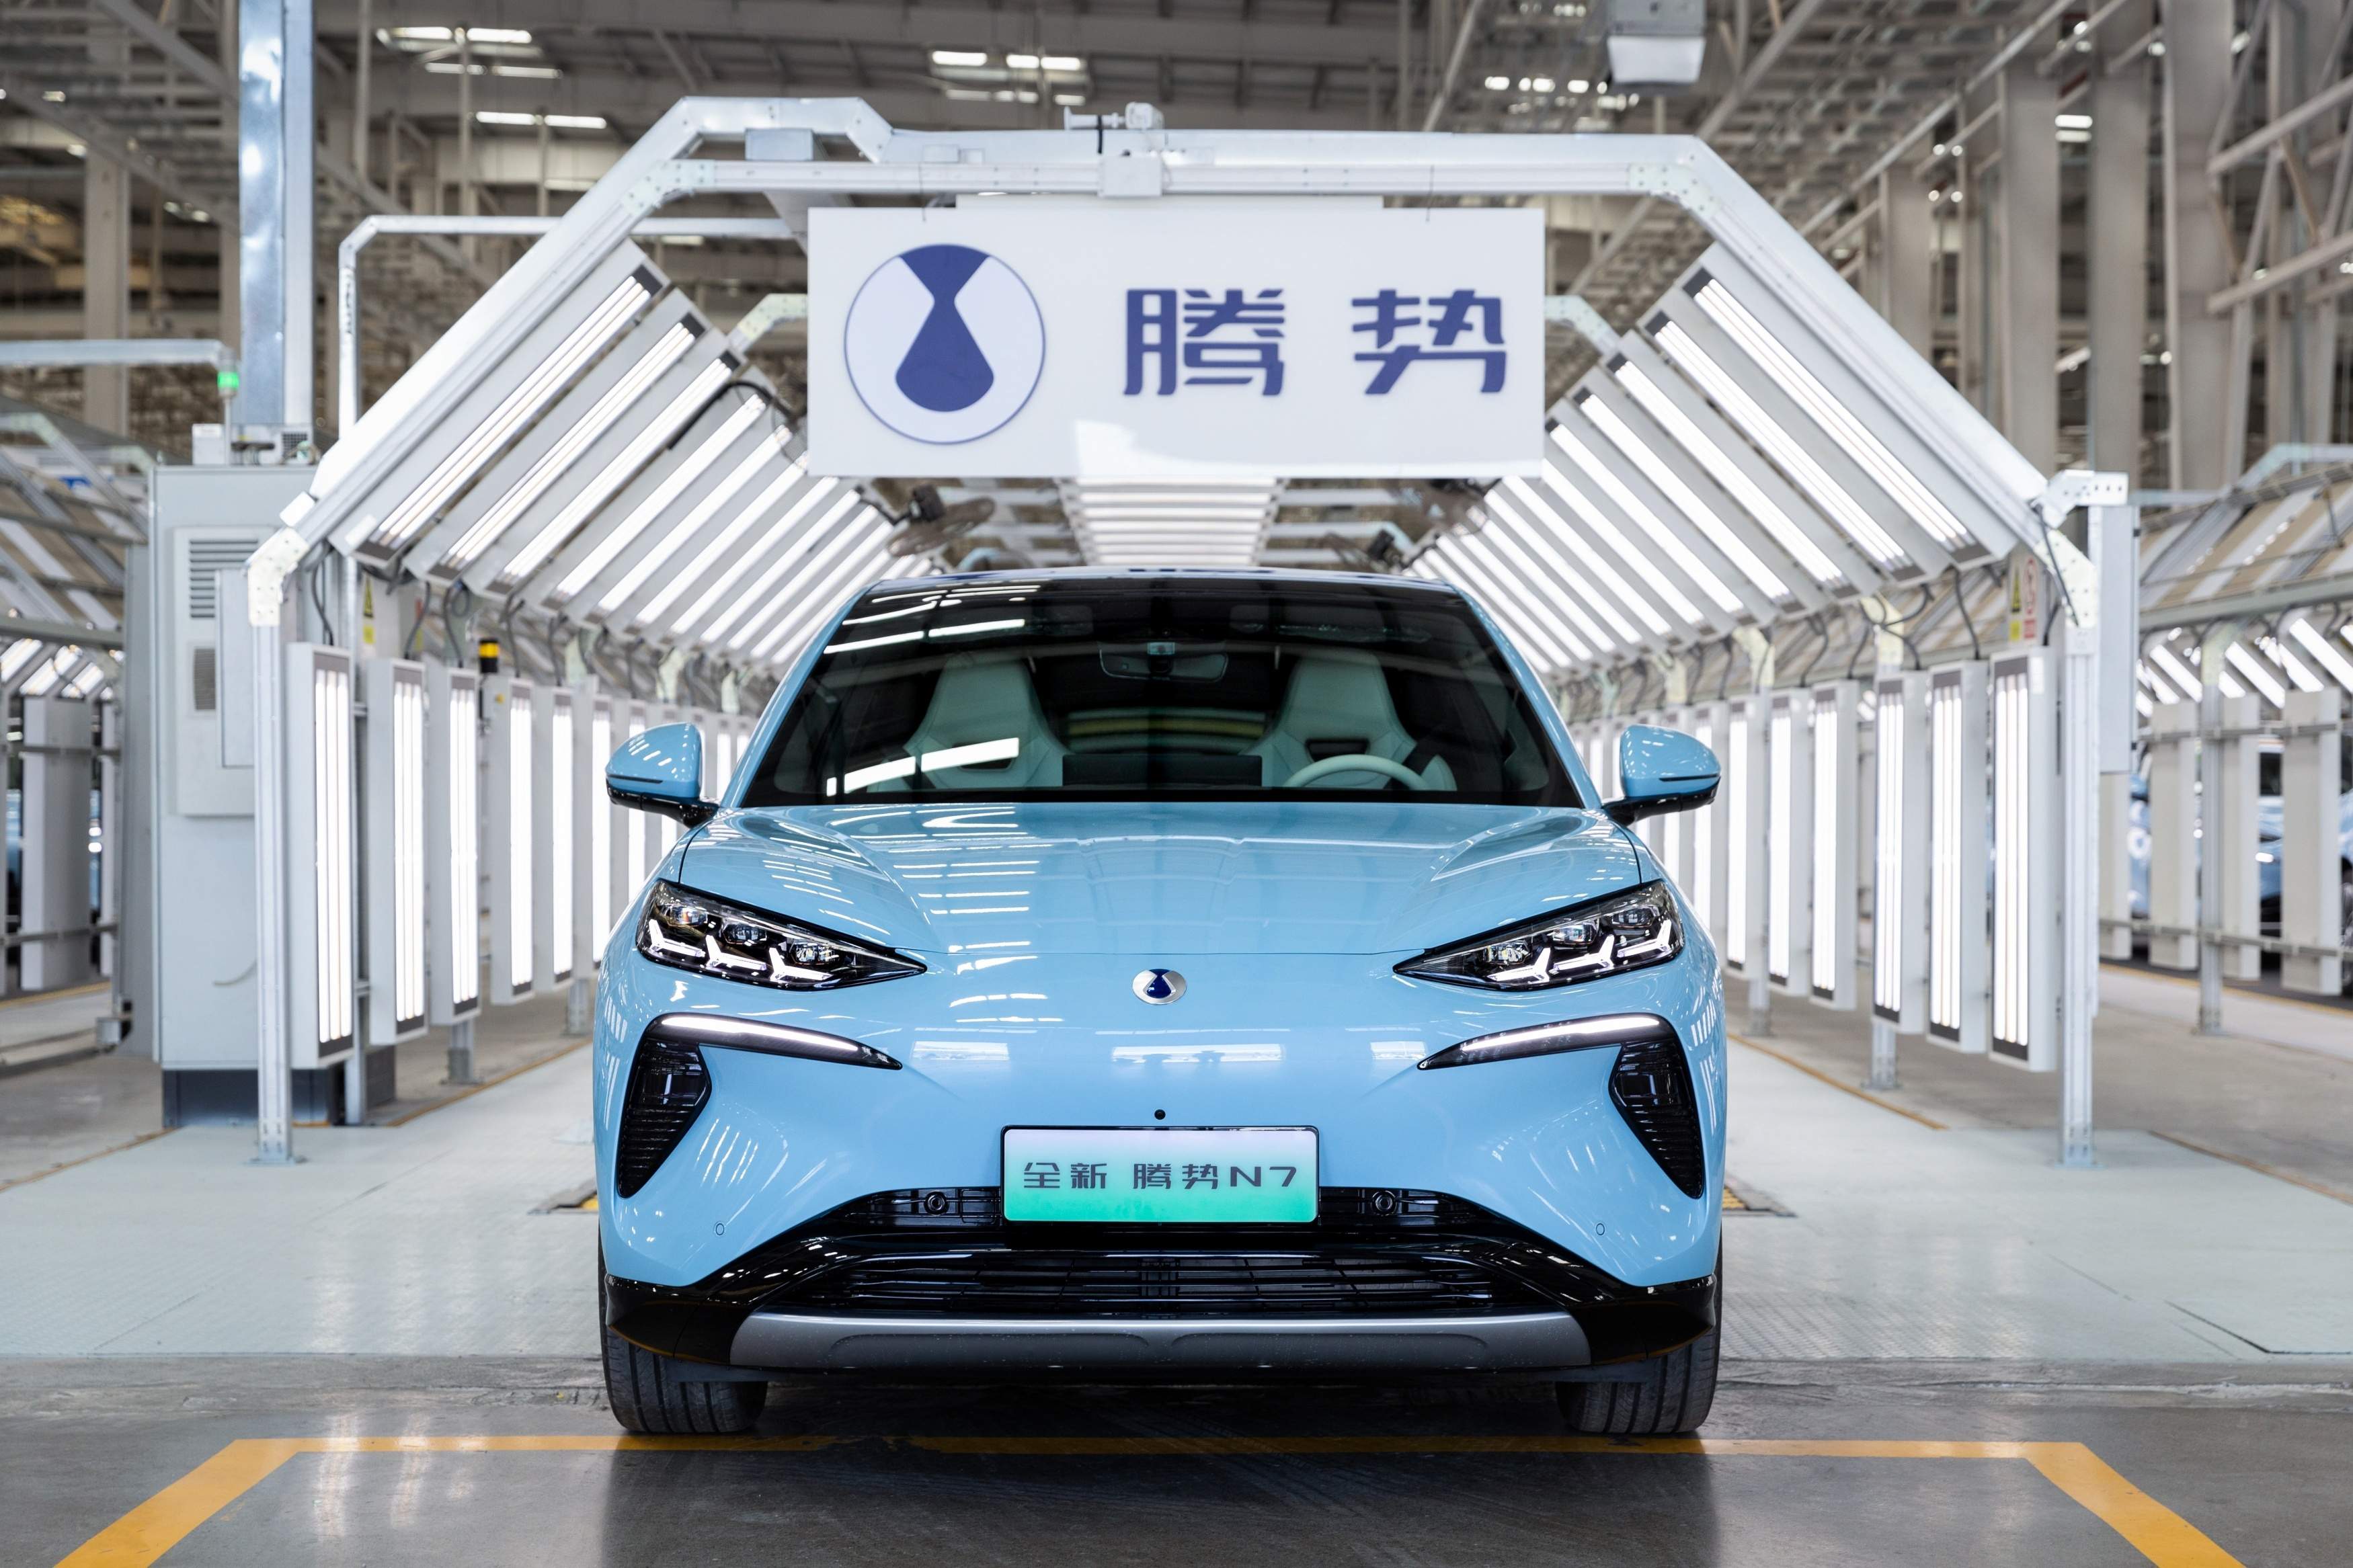 Las ventas de los fabricantes de automóviles chinos superan por primera vez a los de EE.UU.